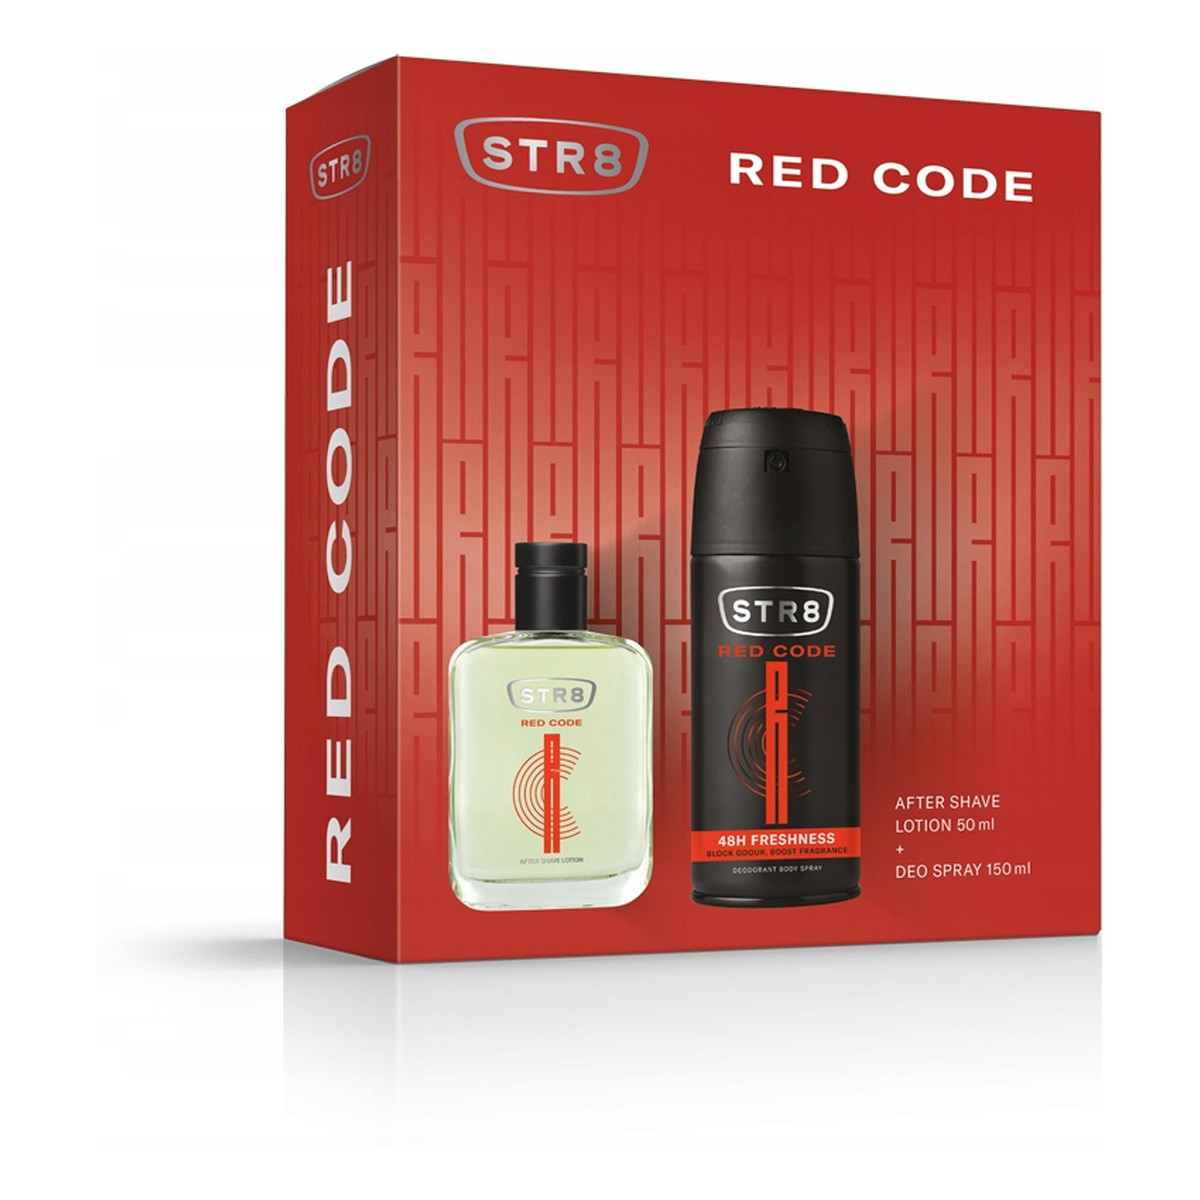 STR8 Red Code Zestaw prezentowy (dezodorant spray 150ml+płyn po goleniu 50ml) 200ml